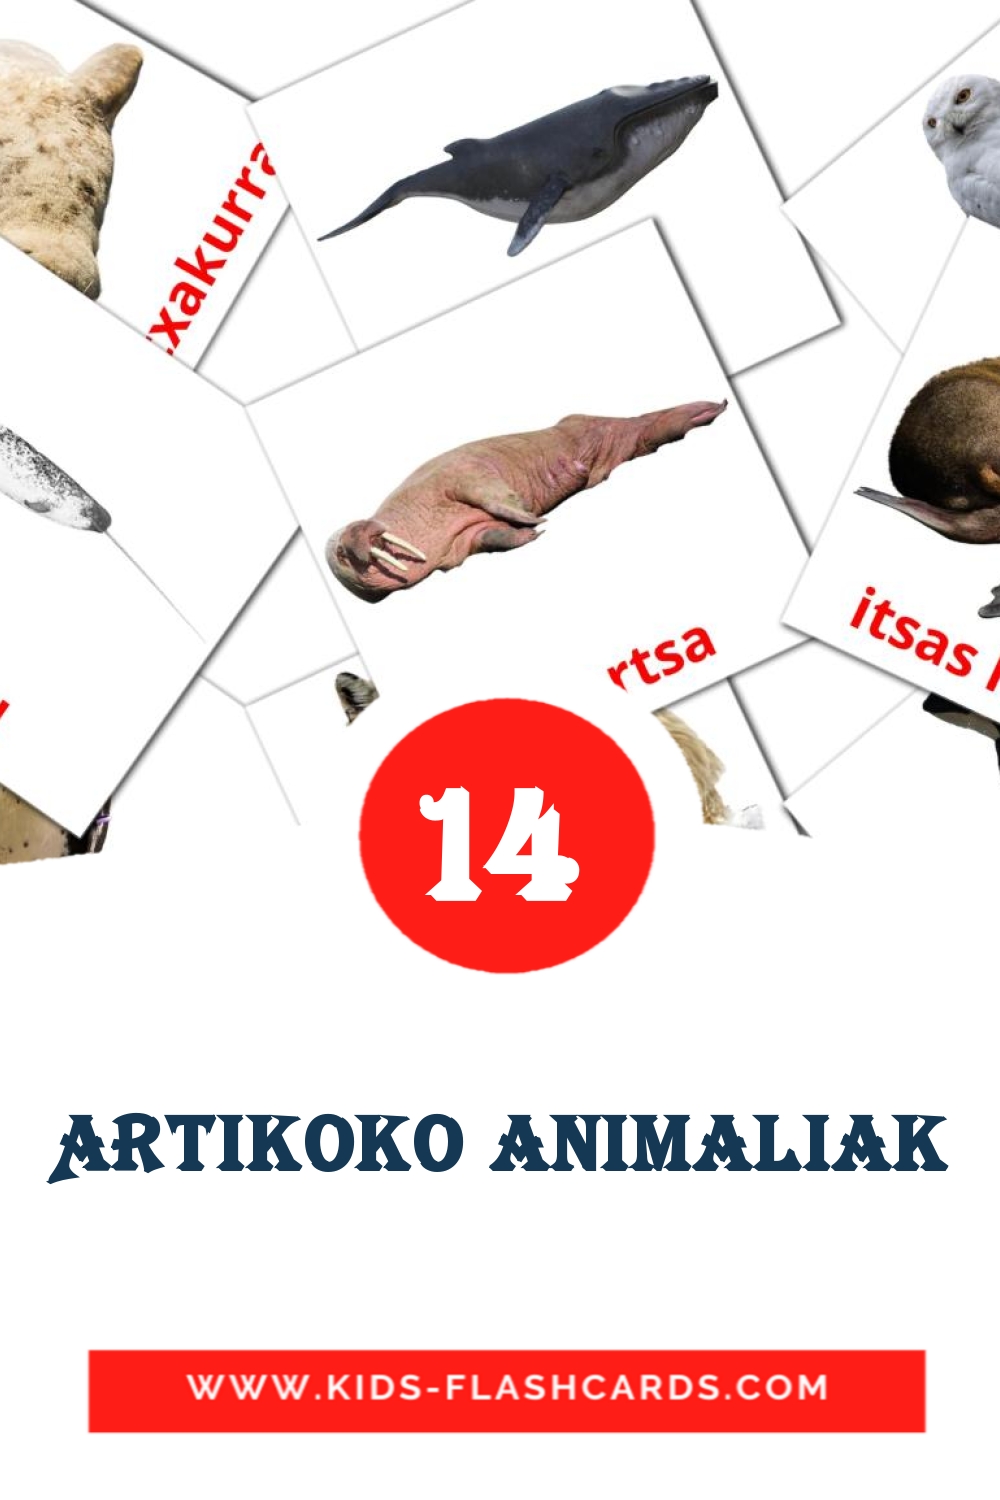 14 cartes illustrées de Artikoko animaliak pour la maternelle en basque